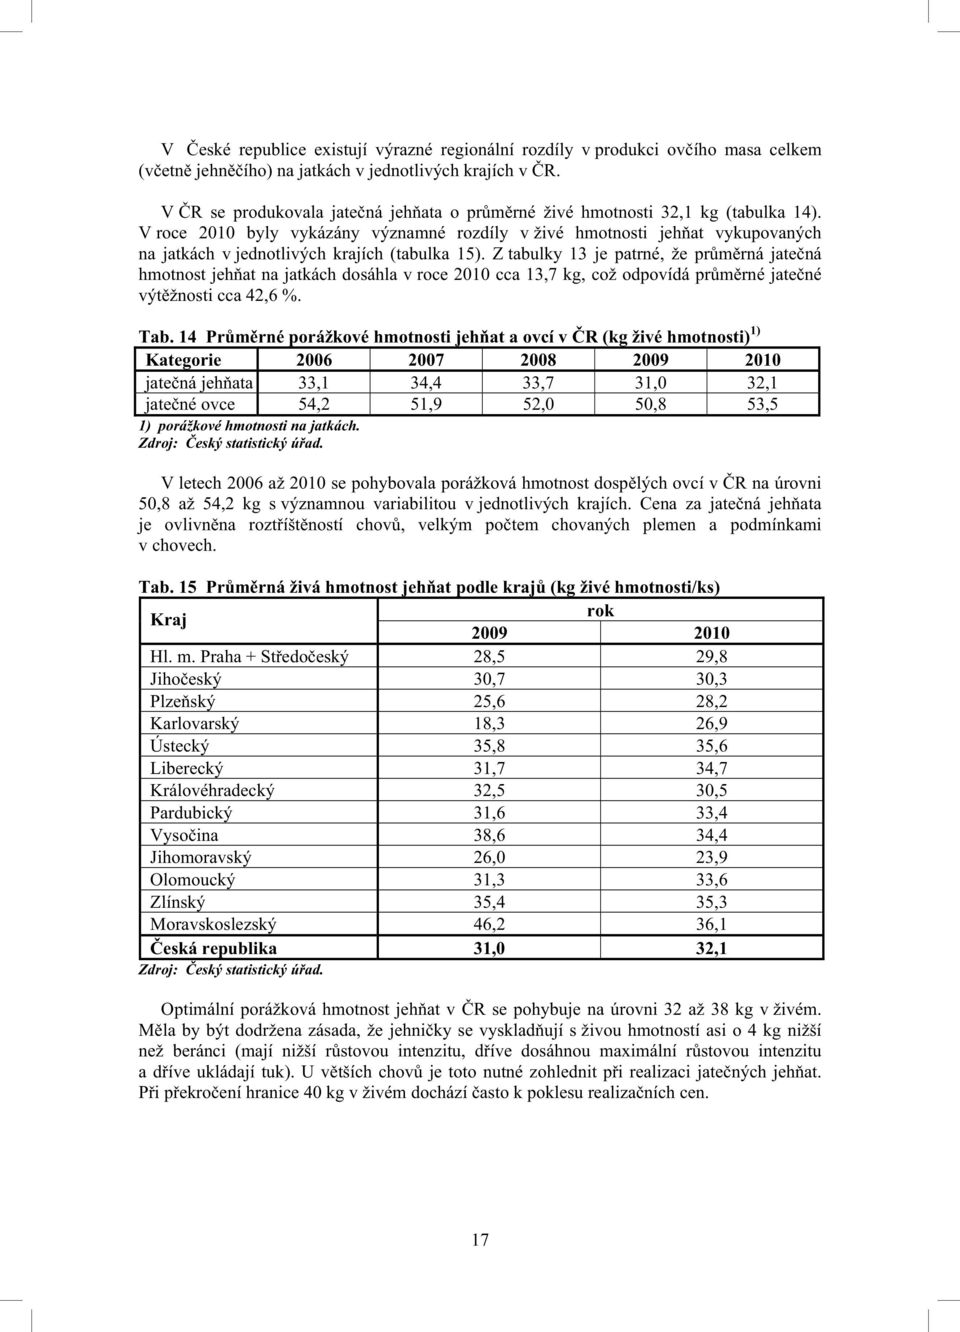 V roce 2010 byly vykázány významné rozdíly v živé hmotnosti jeh at vykupovaných na jatkách v jednotlivých krajích (tabulka 15).